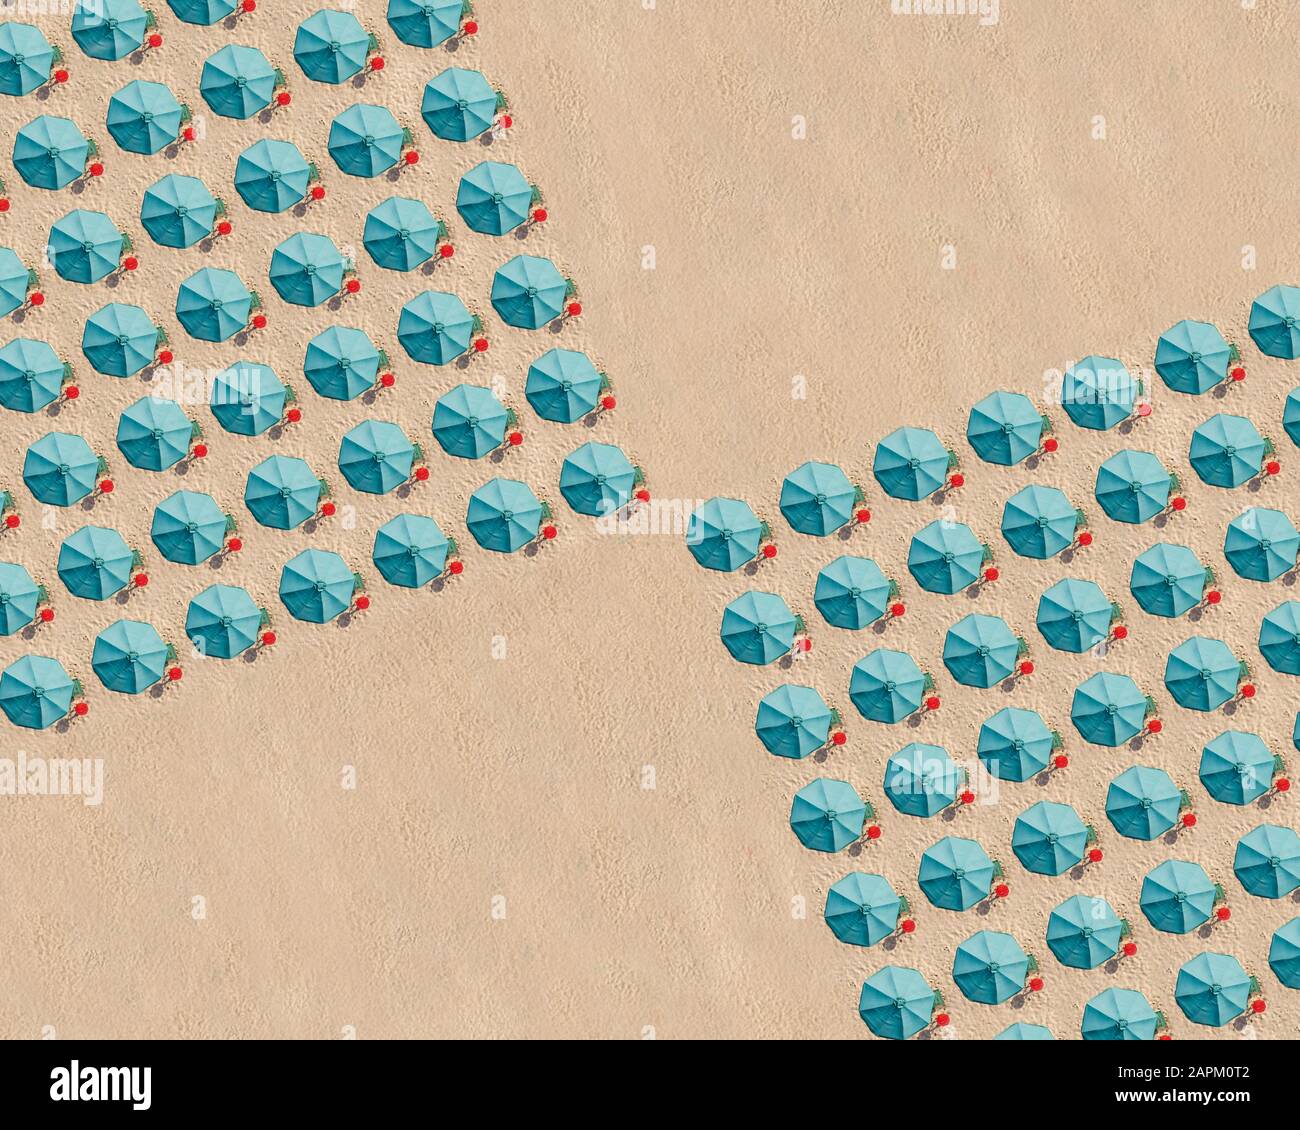 Vue aérienne sur l'organisation de parasols de plage de couleur turquoise Banque D'Images